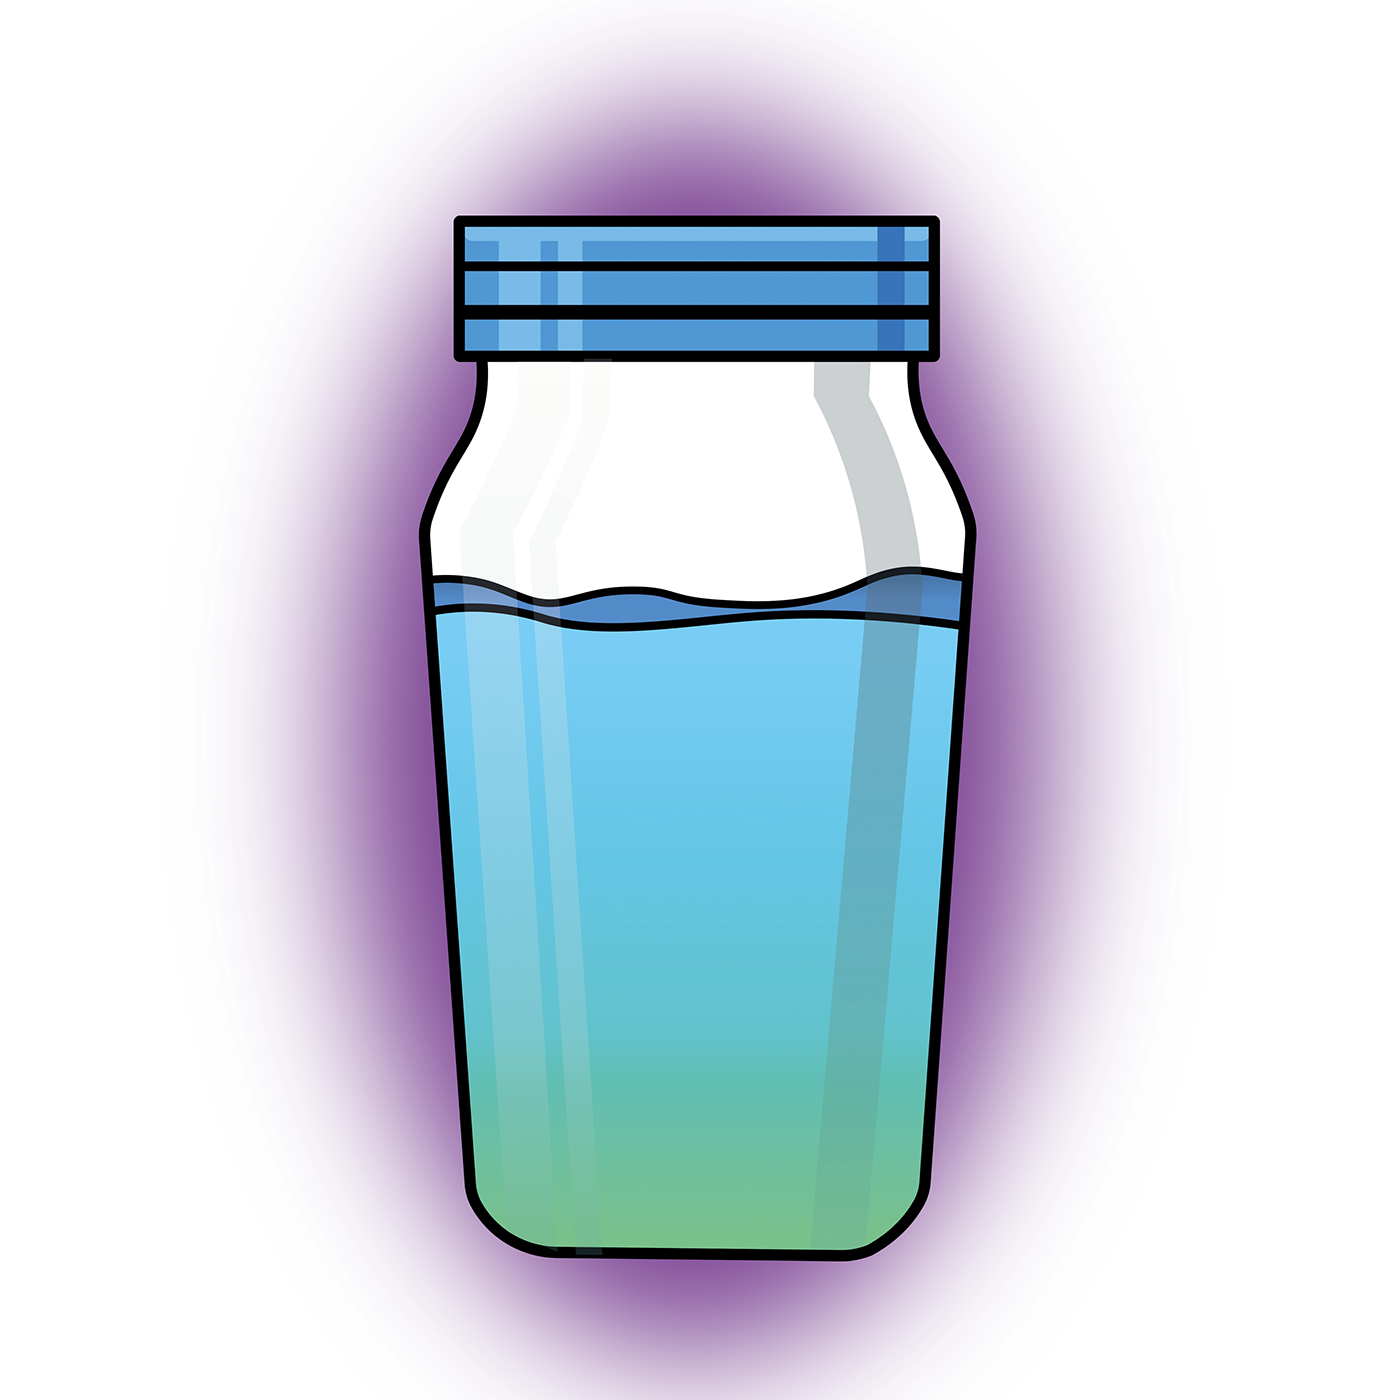 Graphic Bottles Water Juice Design Bottle PNG Image